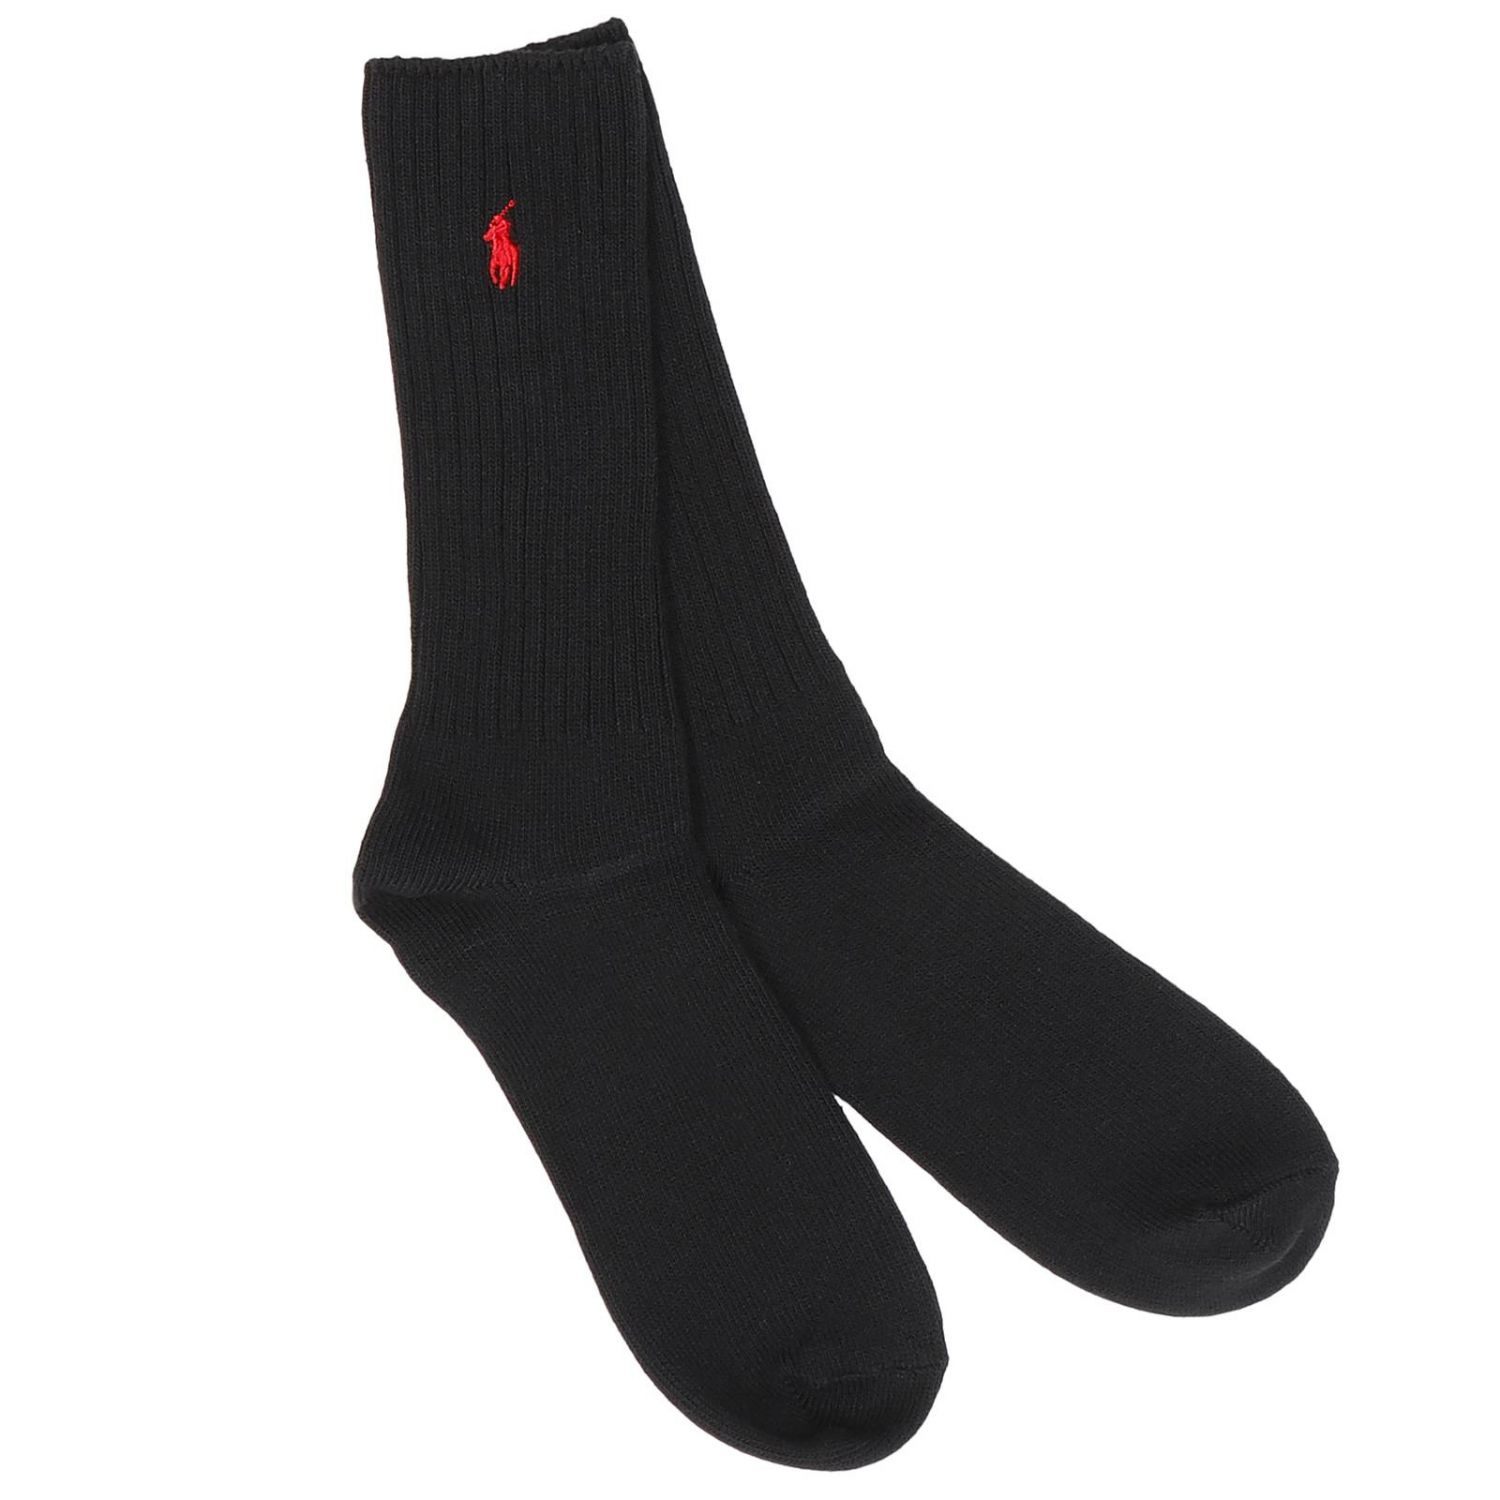 Polo Ralph Lauren Outlet: Socks men | Socks Polo Ralph Lauren Men Black ...